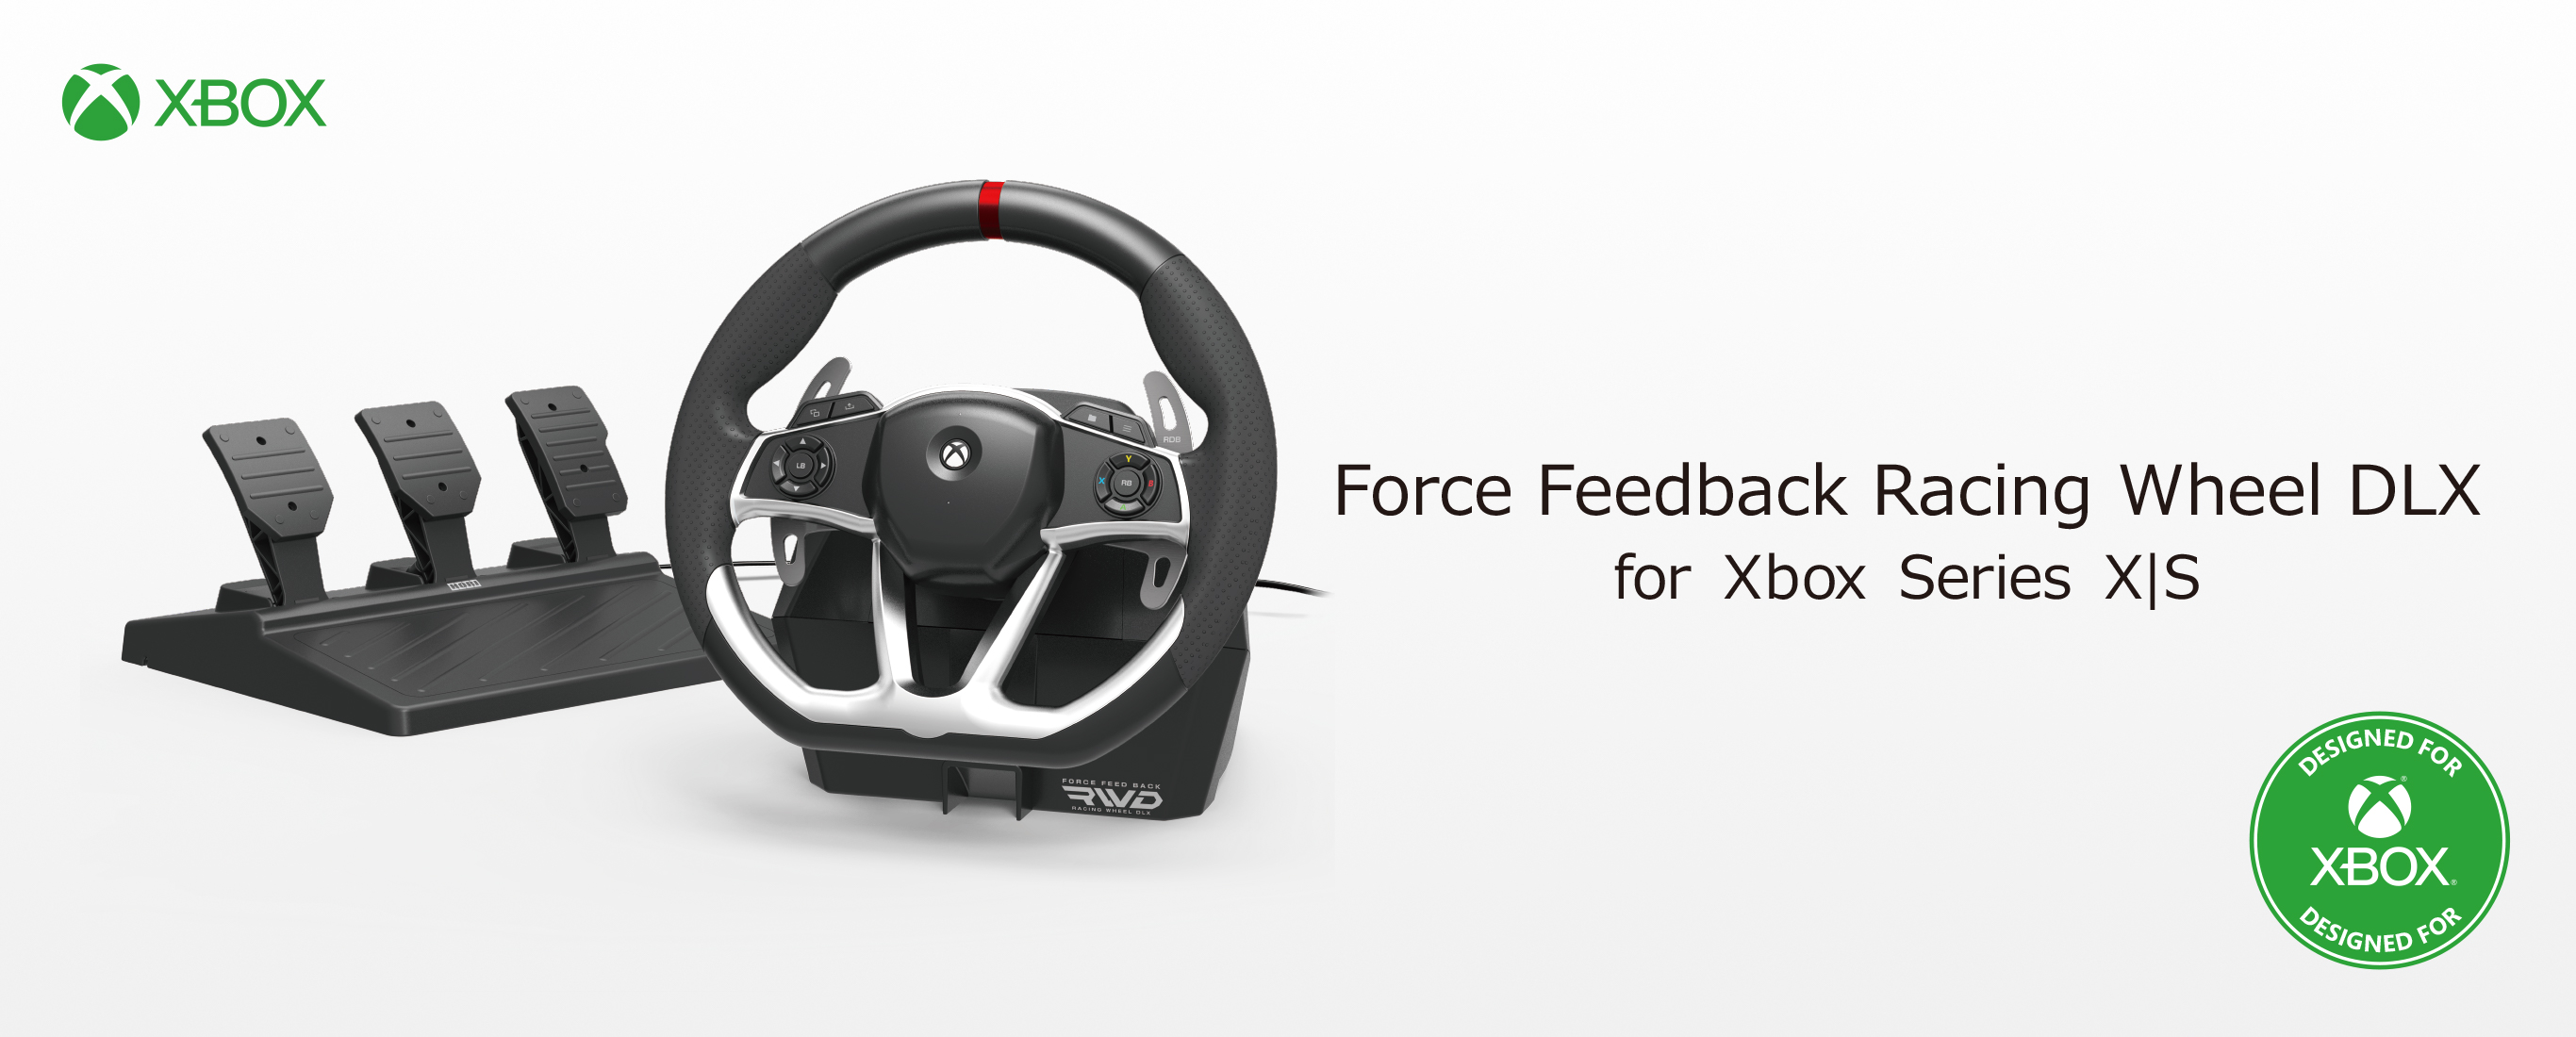 株式会社 HORI | Force Feedback Racing Wheel DLX for Xbox Series X|S